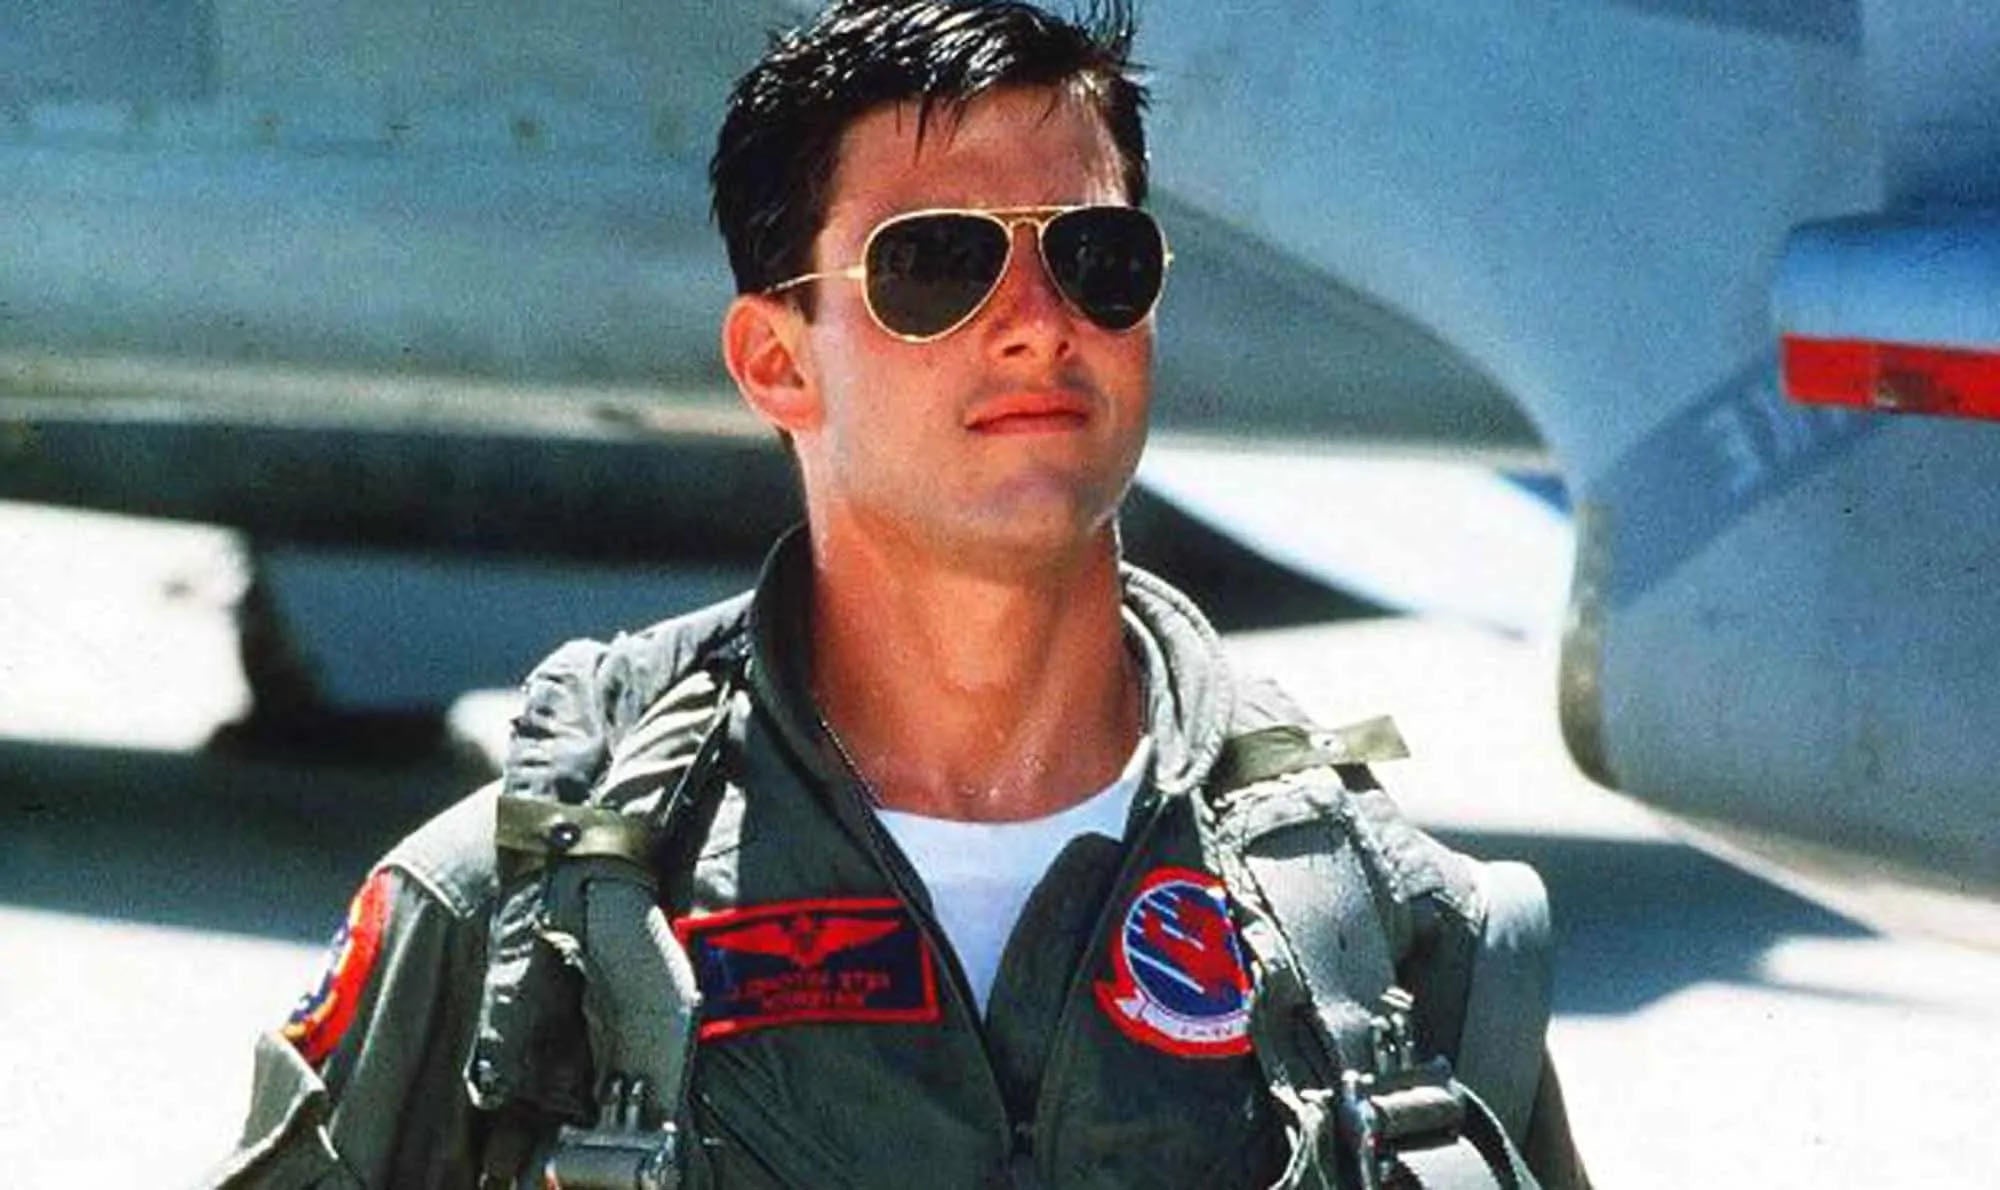 aviator sunglasses in top gun movie worn by tom cruise